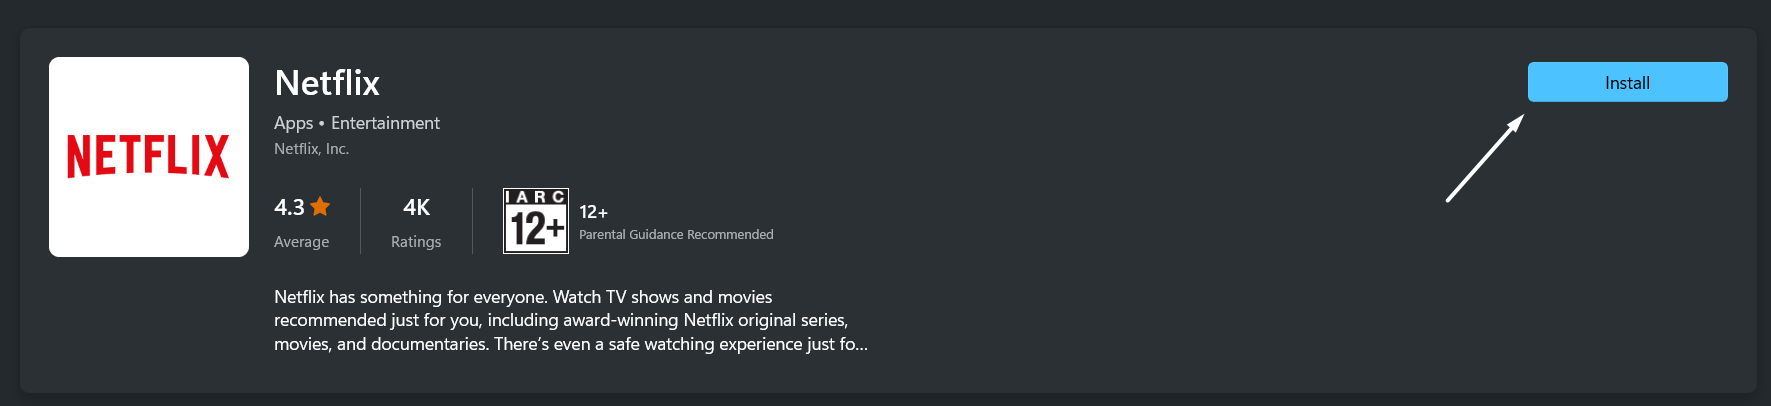 Reinstall the Netflix app on desktop